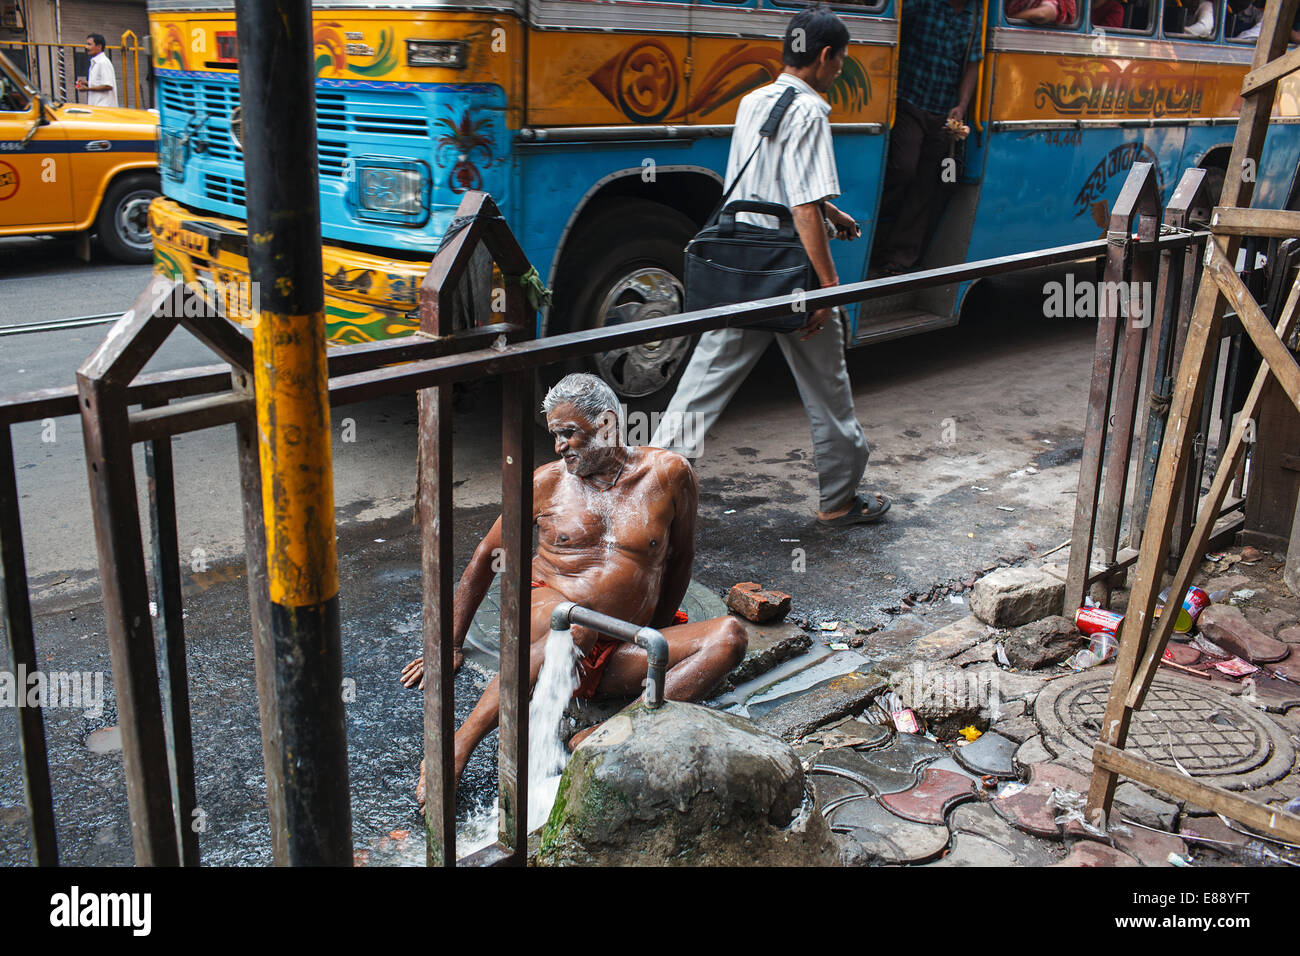 Un hombre toma un baño público en una concurrida calle en Calcuta, India. Foto de stock